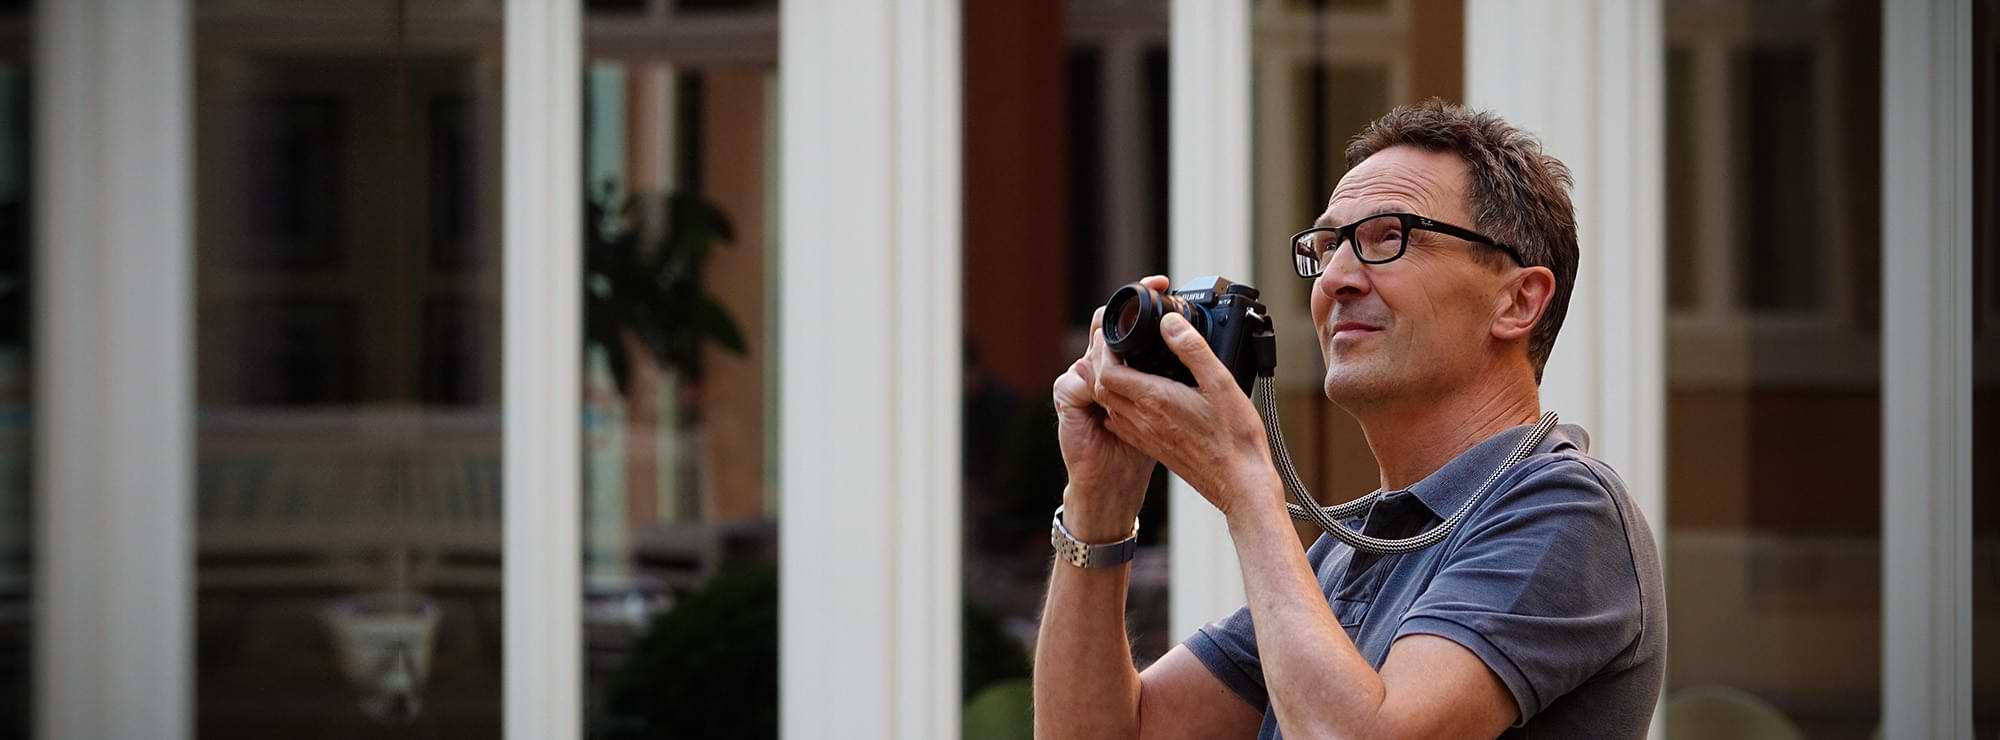 Andreas Dirksen mit der Fotokamera in den Händen, bereit zu fotografieren